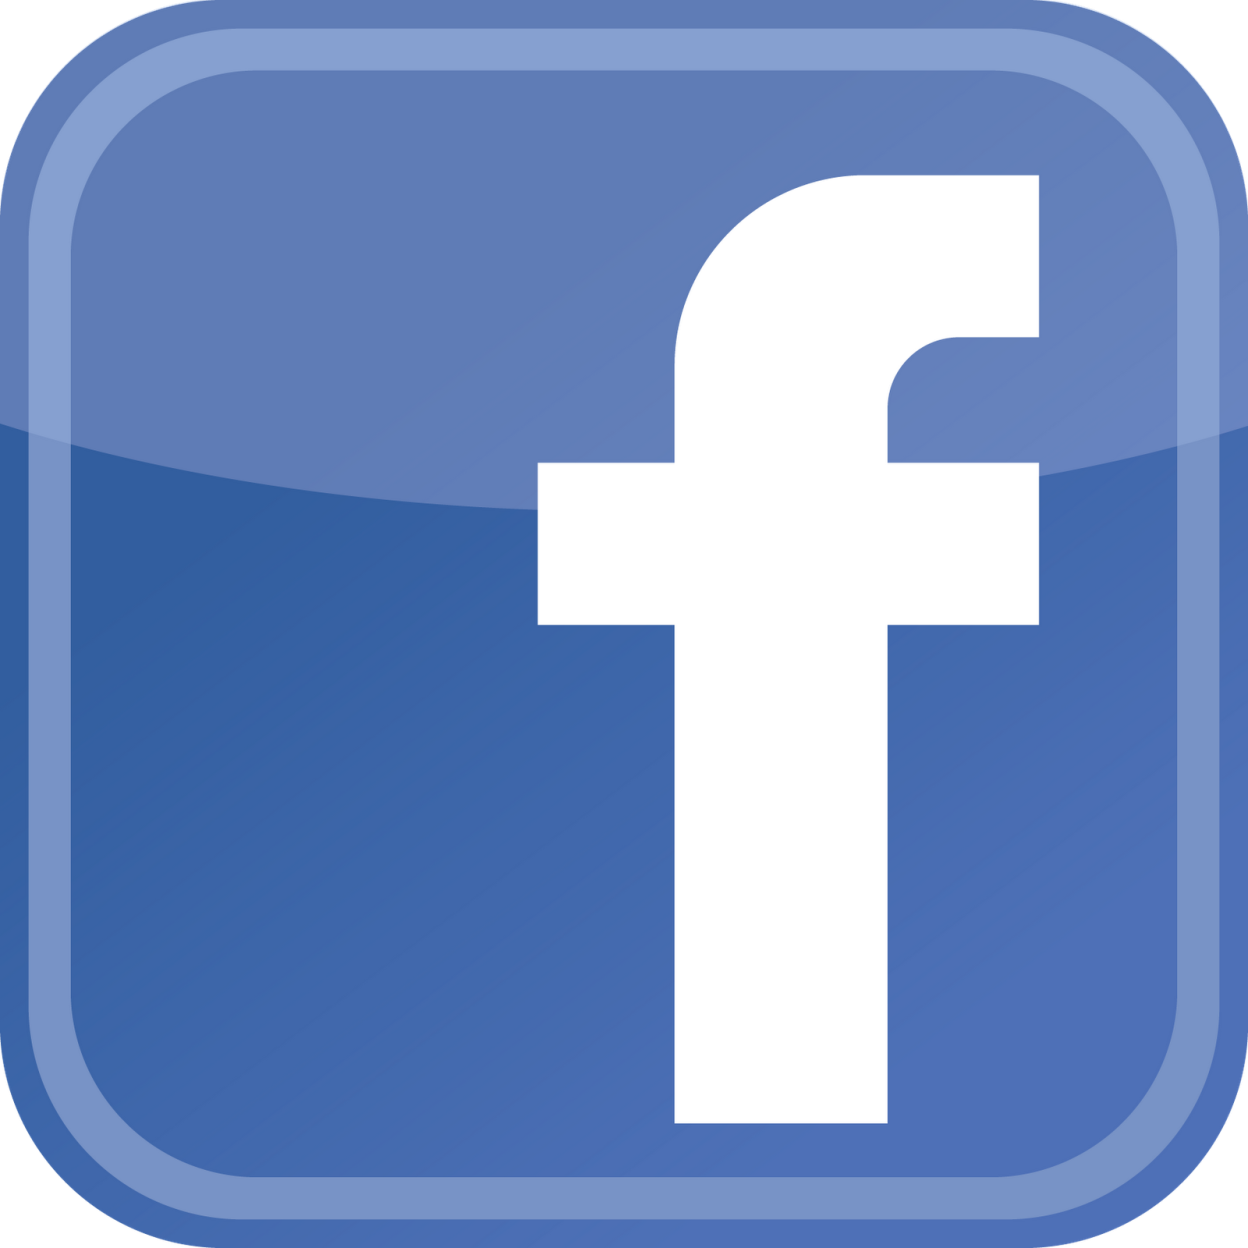 Https facebook com story php. Фейсбук. Facebook логотип. Значки соц сетей по отдельности. Рисунок соцсети Фейсбук.